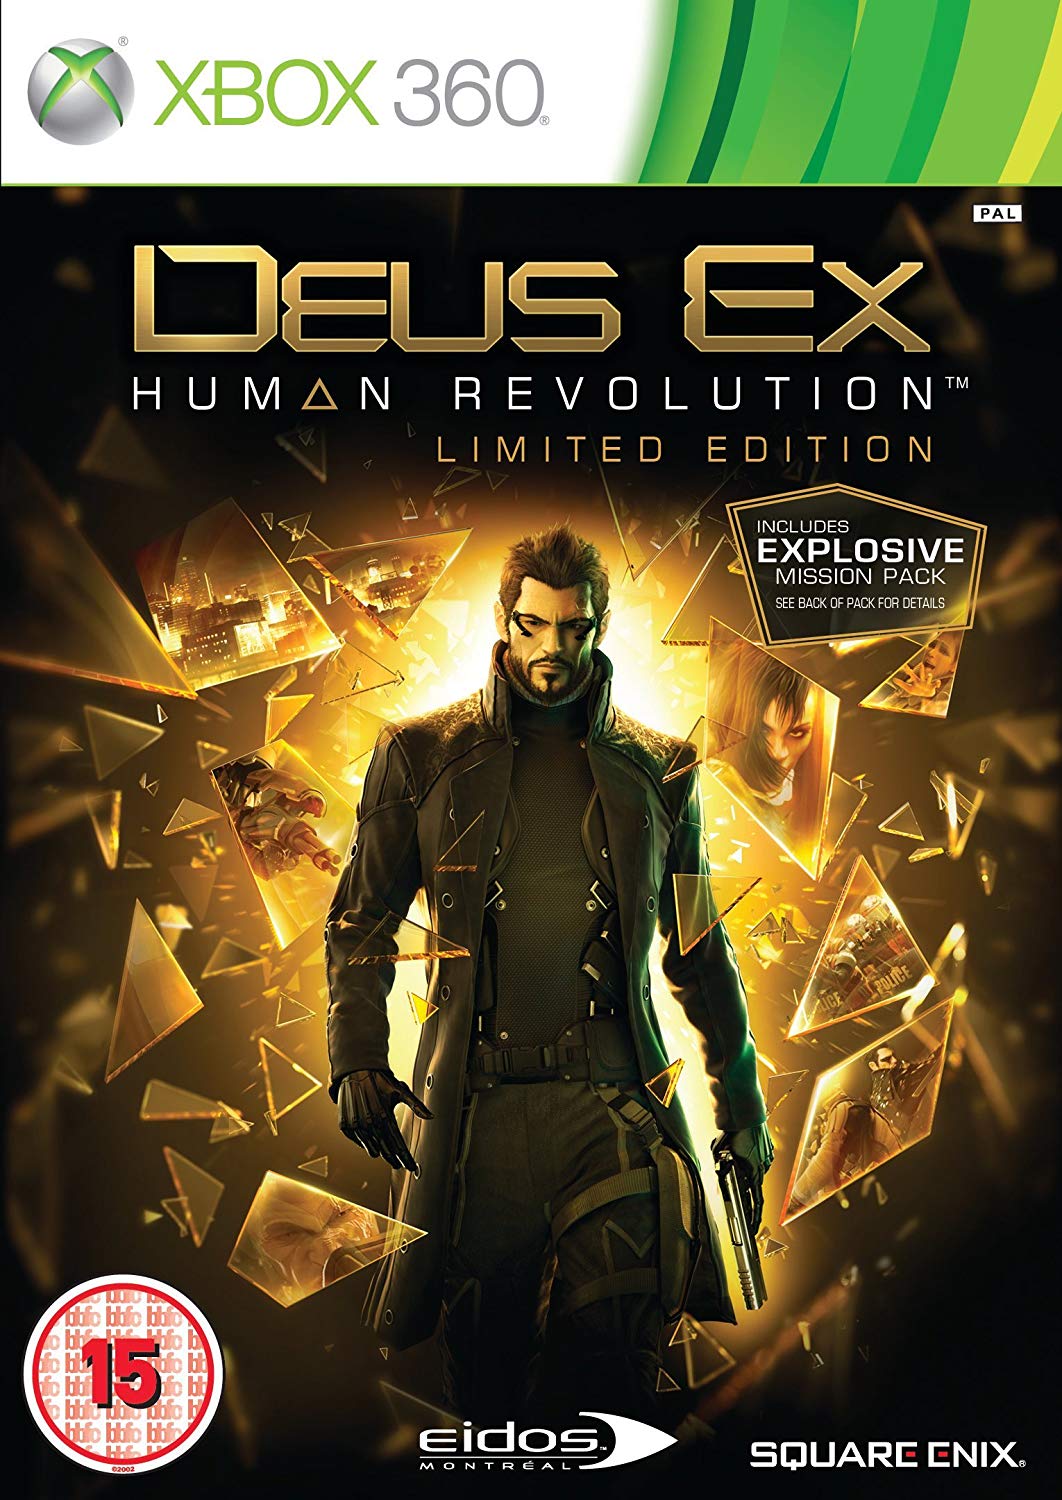 Deus Ex Human Revolution Limited Edition (német doboz, artbook nélkül)